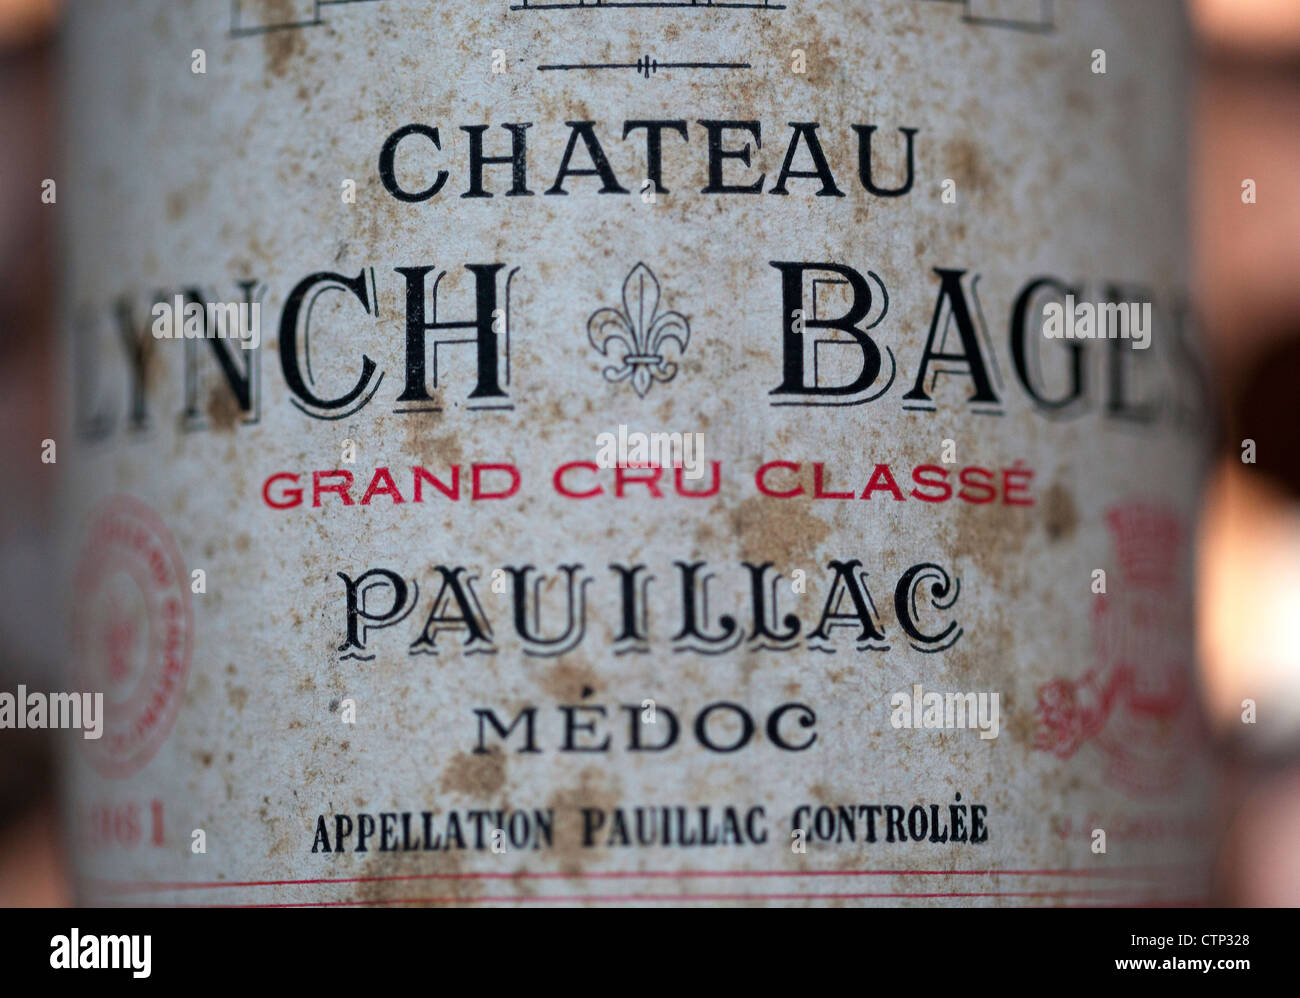 Chateau Lynch Bages Pauillac Botella de Vino Tinto Foto de stock